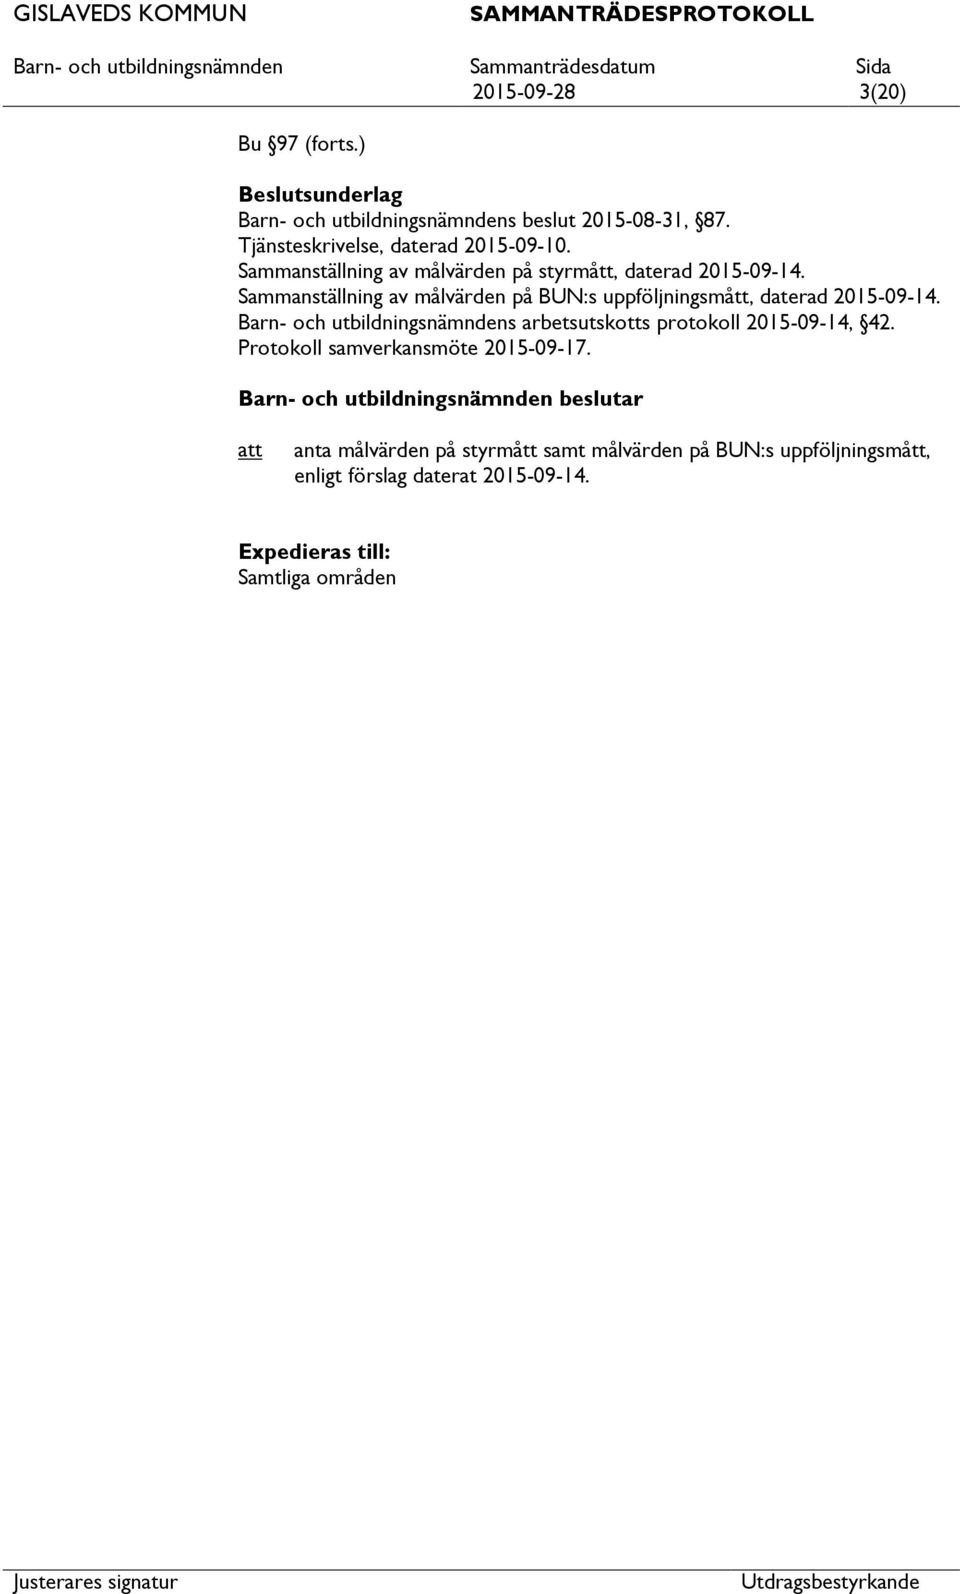 Sammanställning av målvärden på BUN:s uppföljningsmått, daterad 2015-09-14.